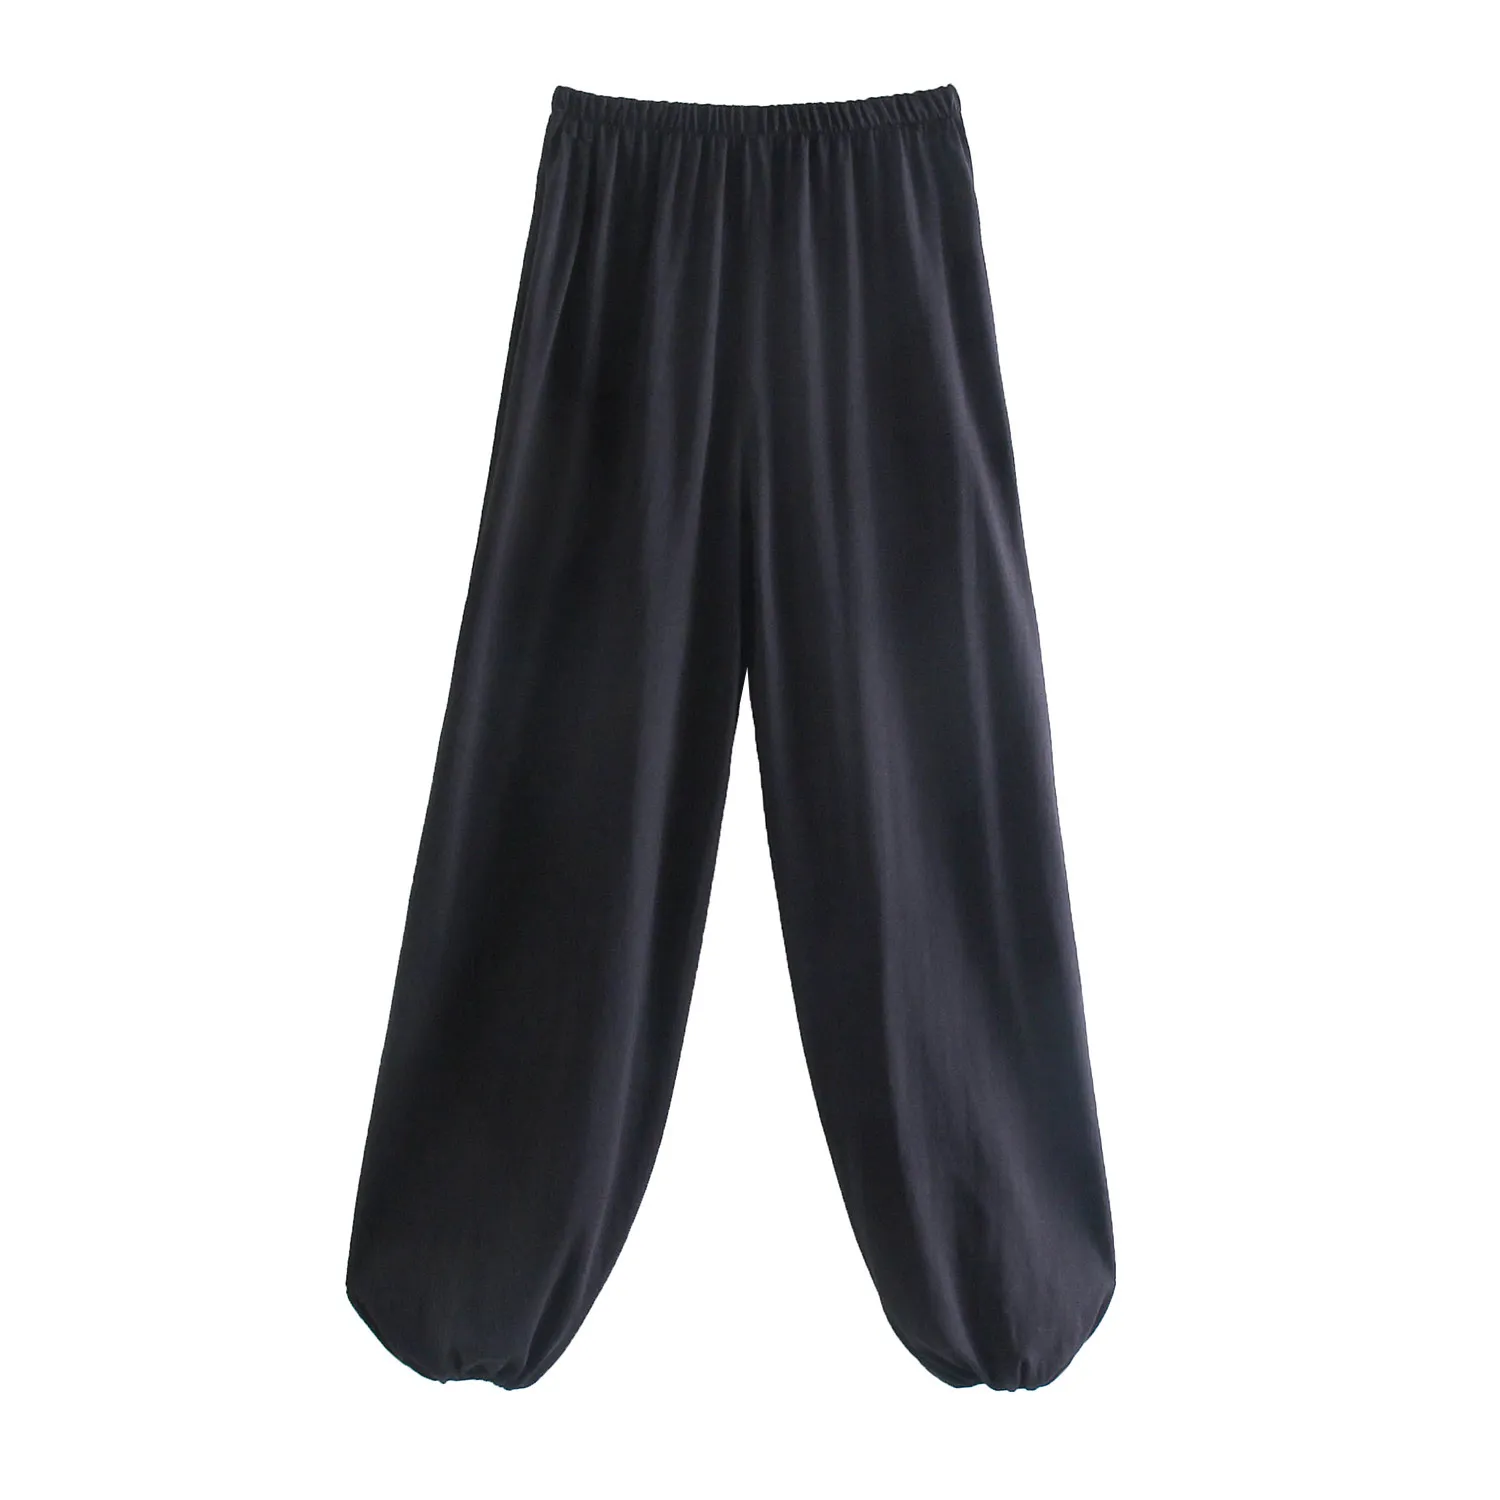 Femmes Vintage pantalon de ballon noir Femme taille haute taille elastic de la jambe large HEMs pantalons femme 210520